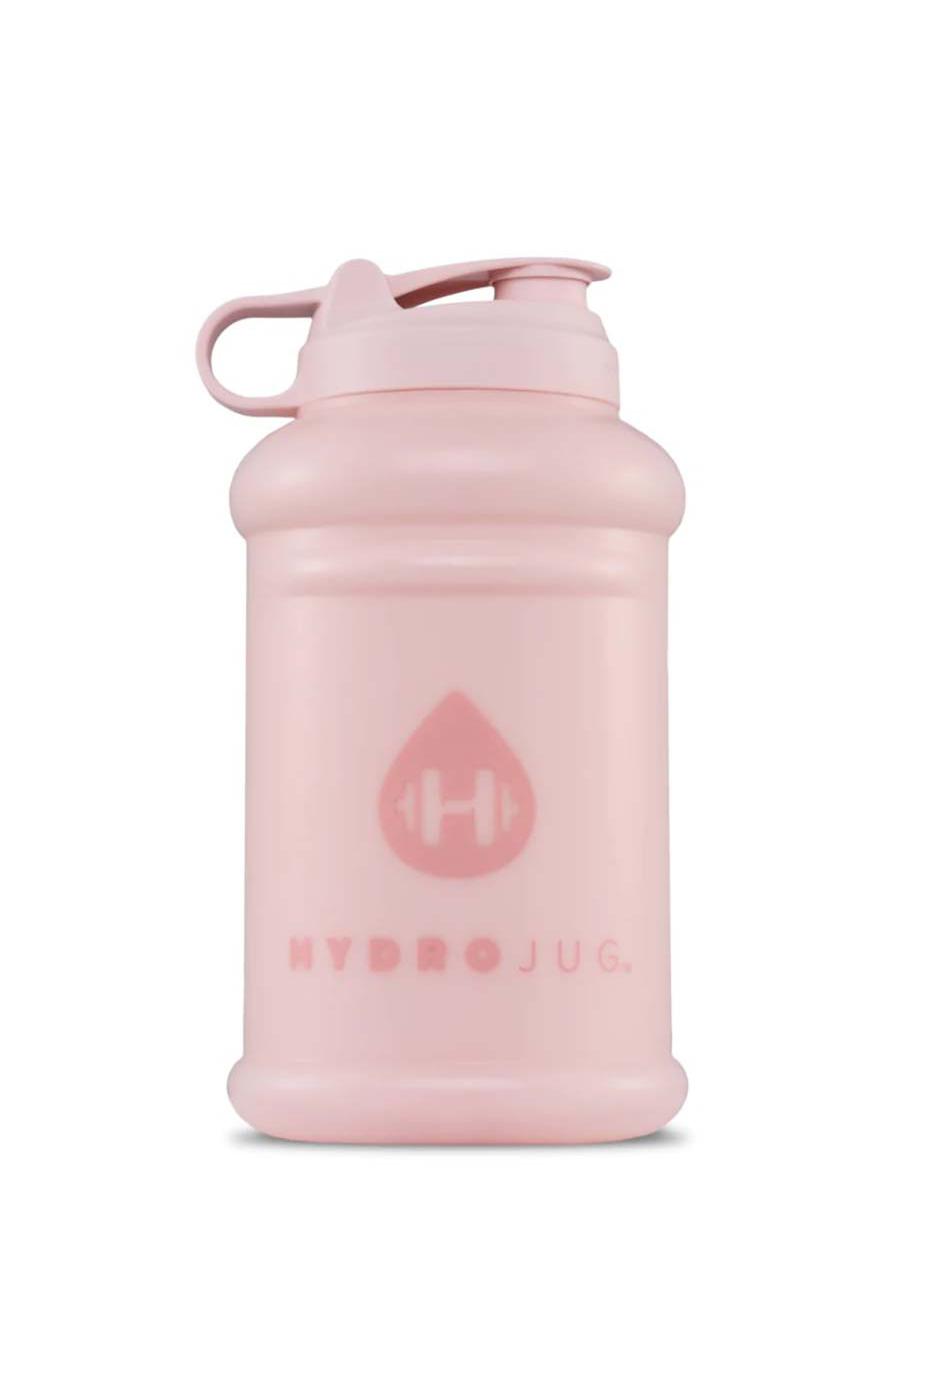 Hydrojug Pro White